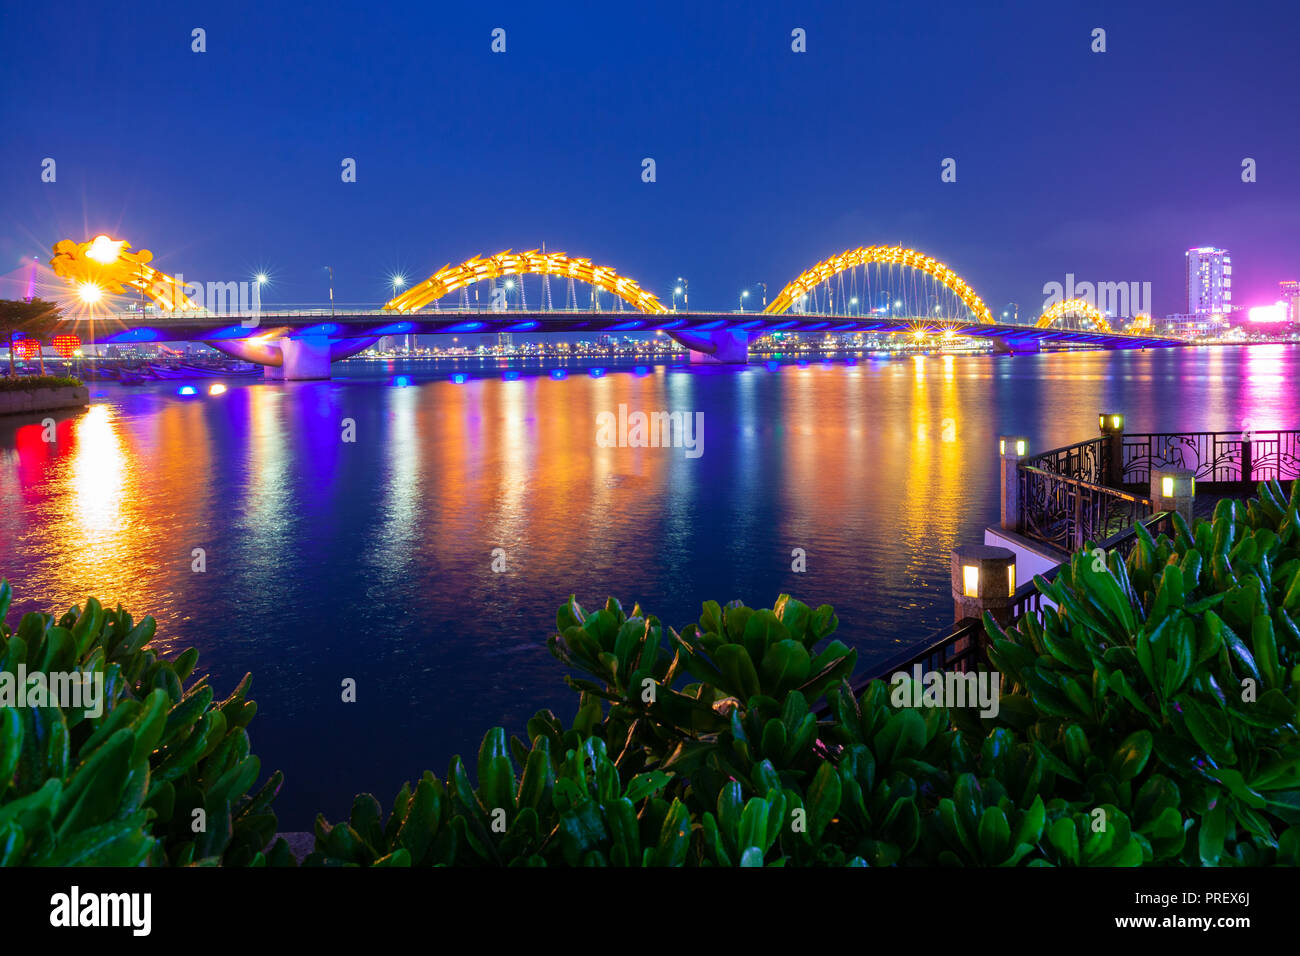 A night view of the Dragon Bridge (Cau Rong) , Da Nang, Vietnam Stock Photo